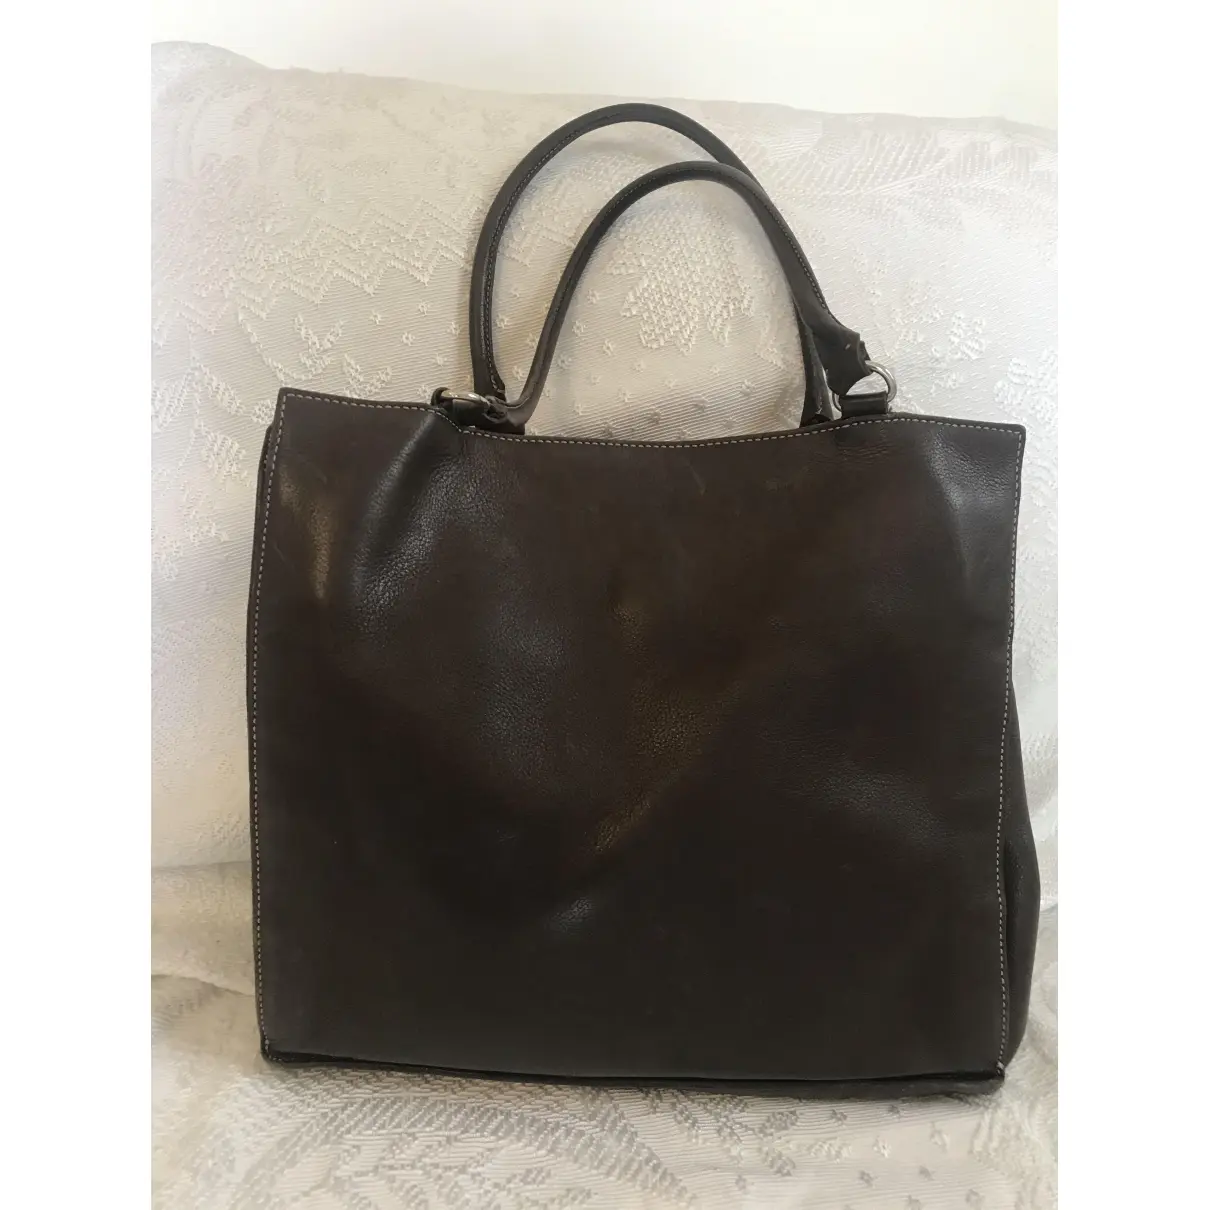 Mauro Governa Leather handbag for sale